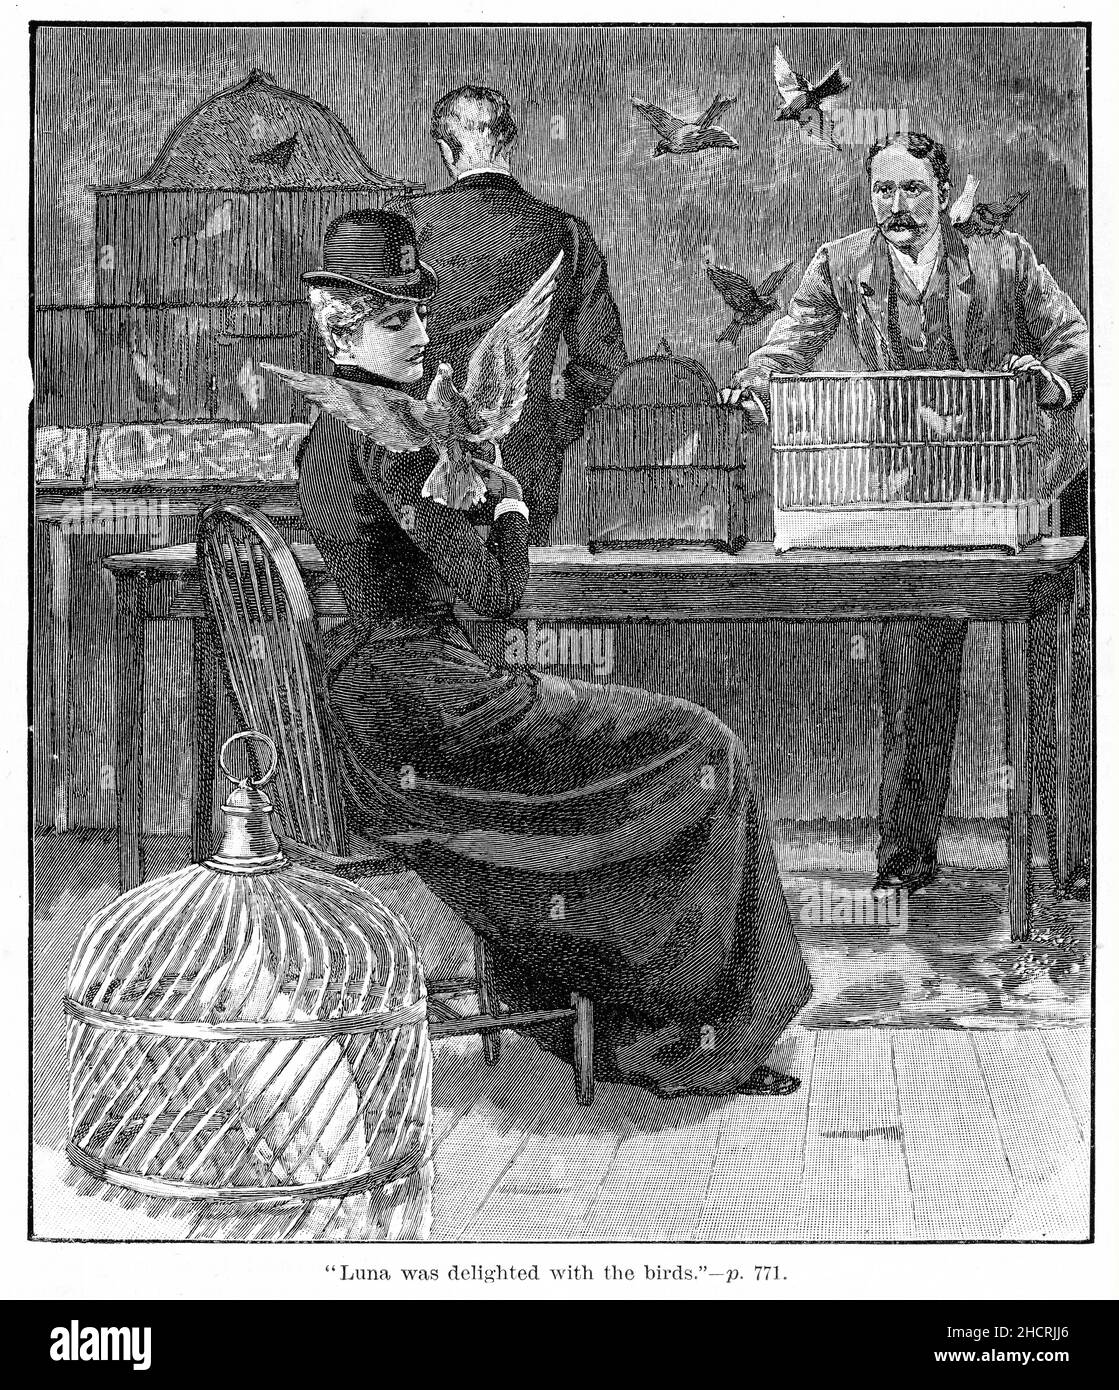 Incisione di una donna dell'era victoria circondata da uccelli da compagnia in un negozio, pubblicato nel 1892 Foto Stock